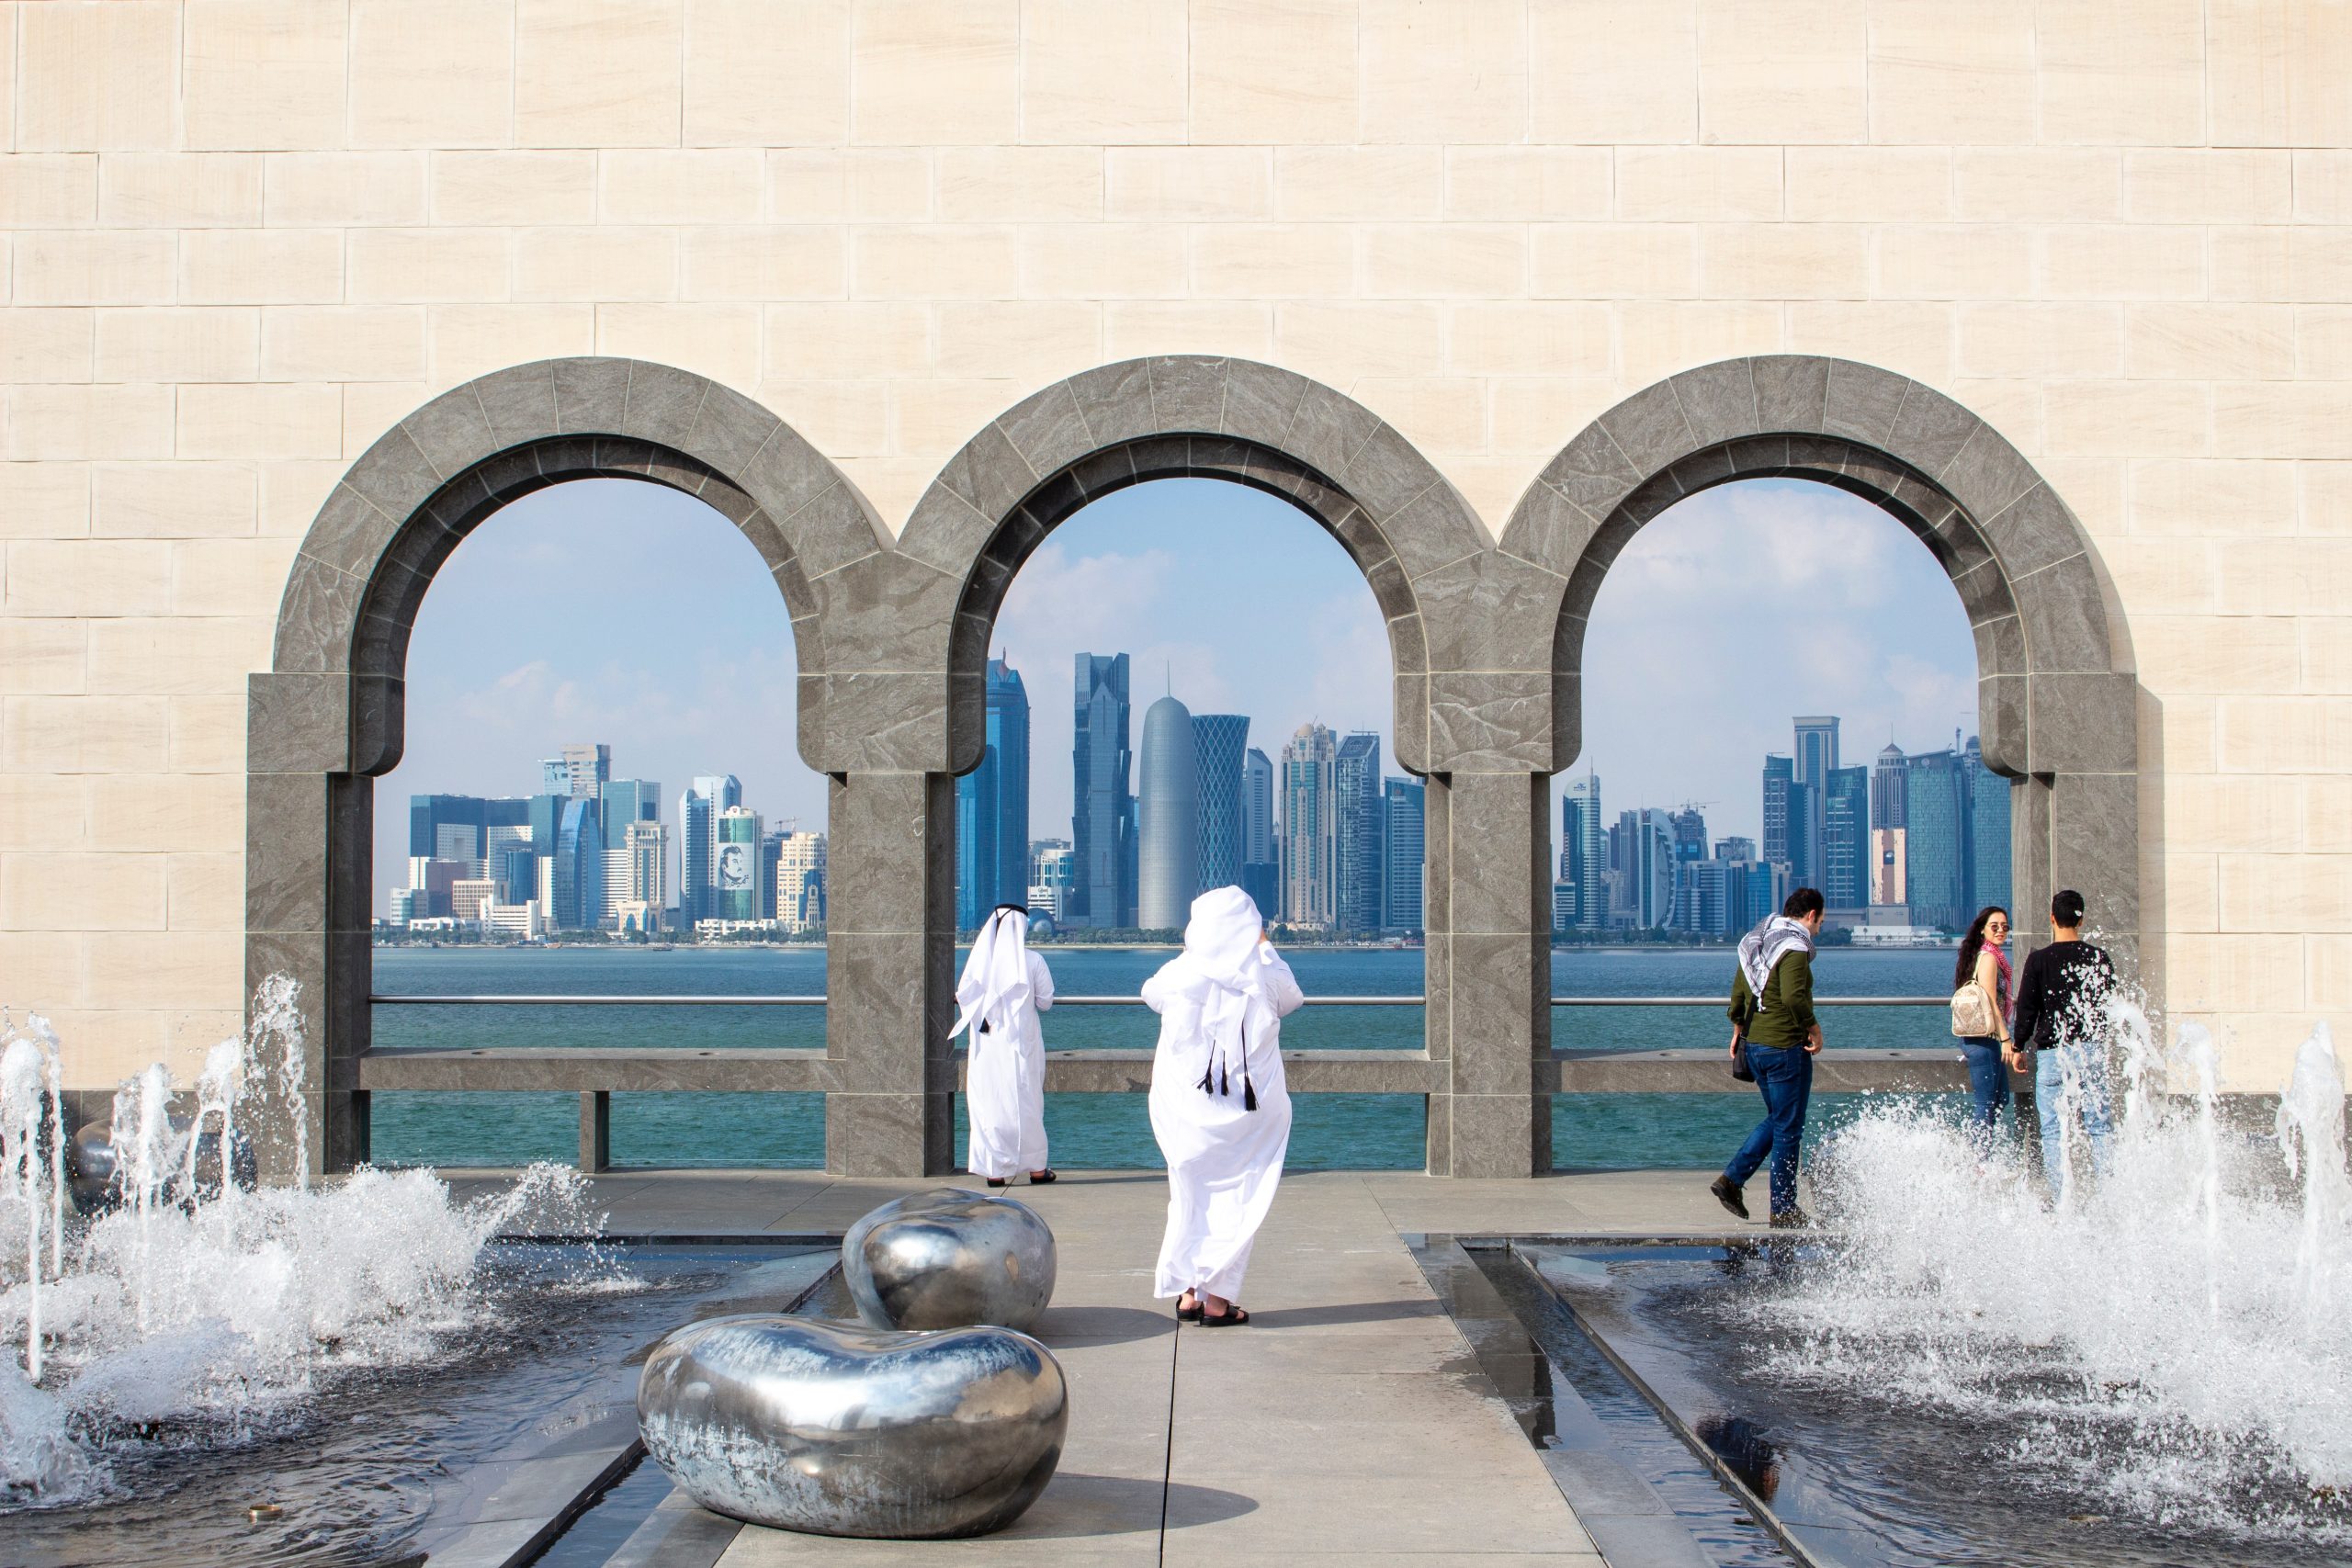 الشباب العربي يطلقون على قطر اسم “دولة نموذجية” كواحدة من أكثر الأماكن المرغوبة للعيش: استطلاع – أخبار الدوحة